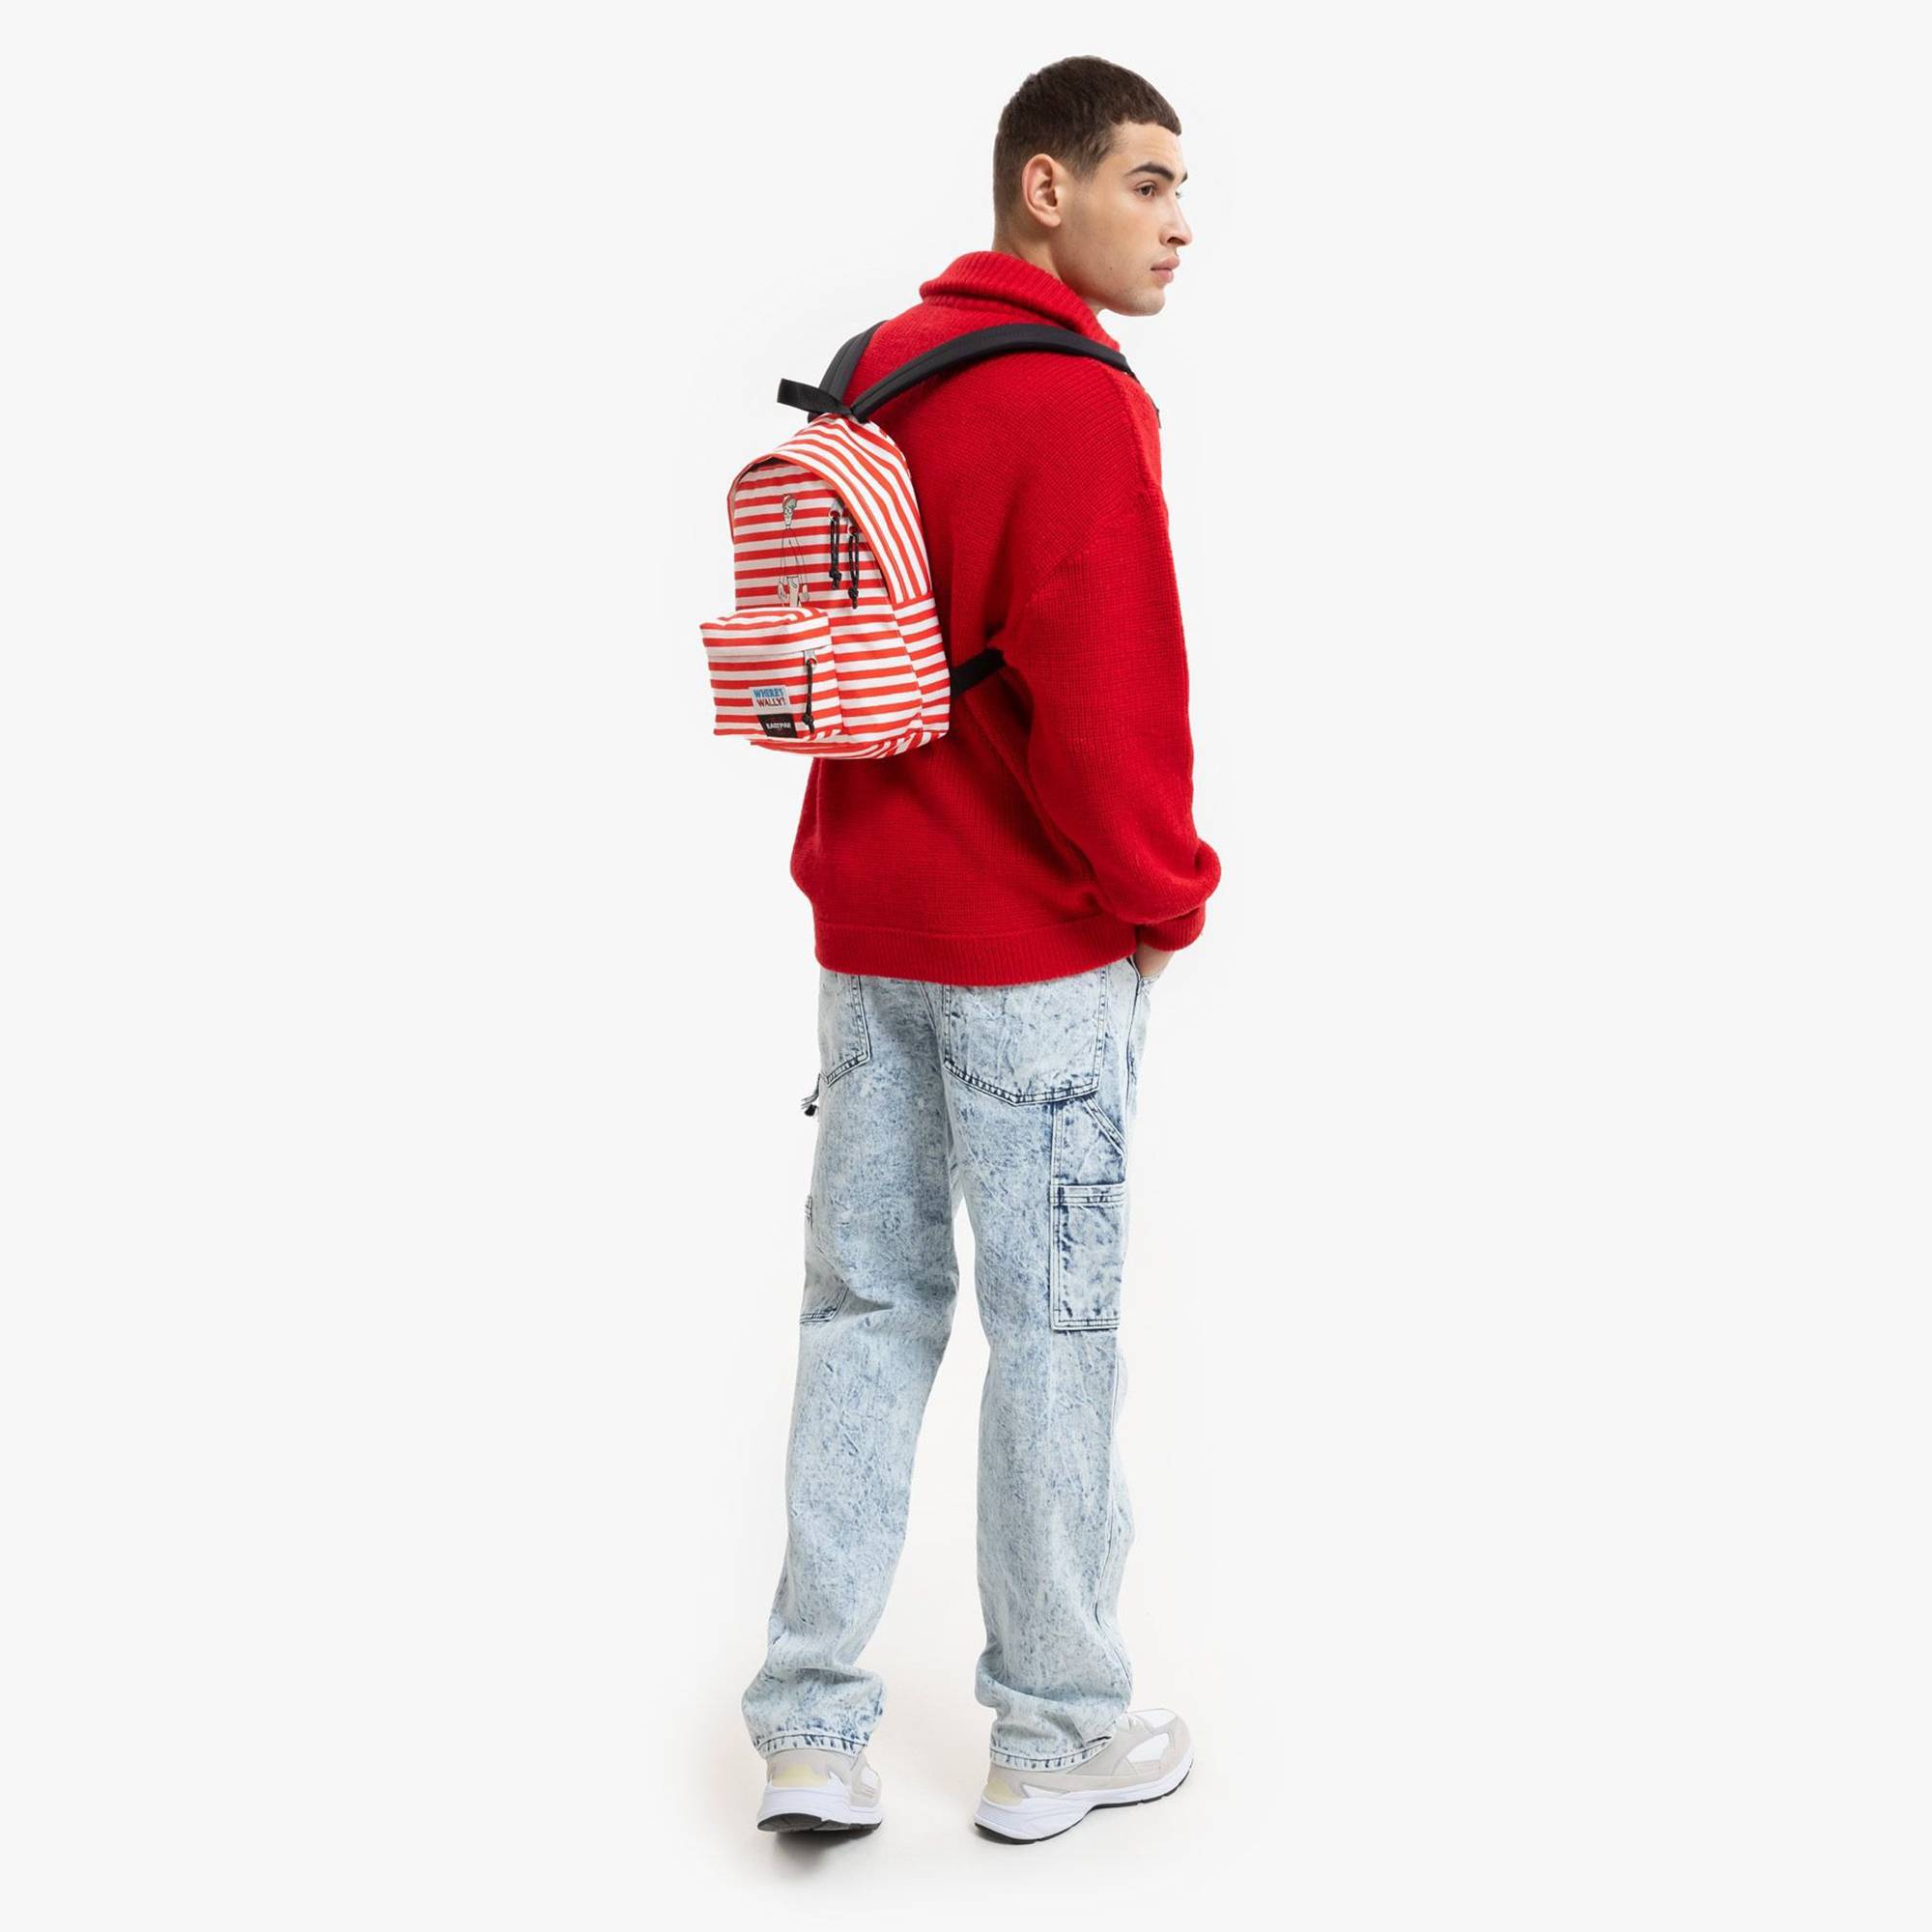 Petit sac à dos Eastpak Orbit XS K043-2E5 couleur Wally Silk Stripe (Rouge), porté mannequin homme de loin